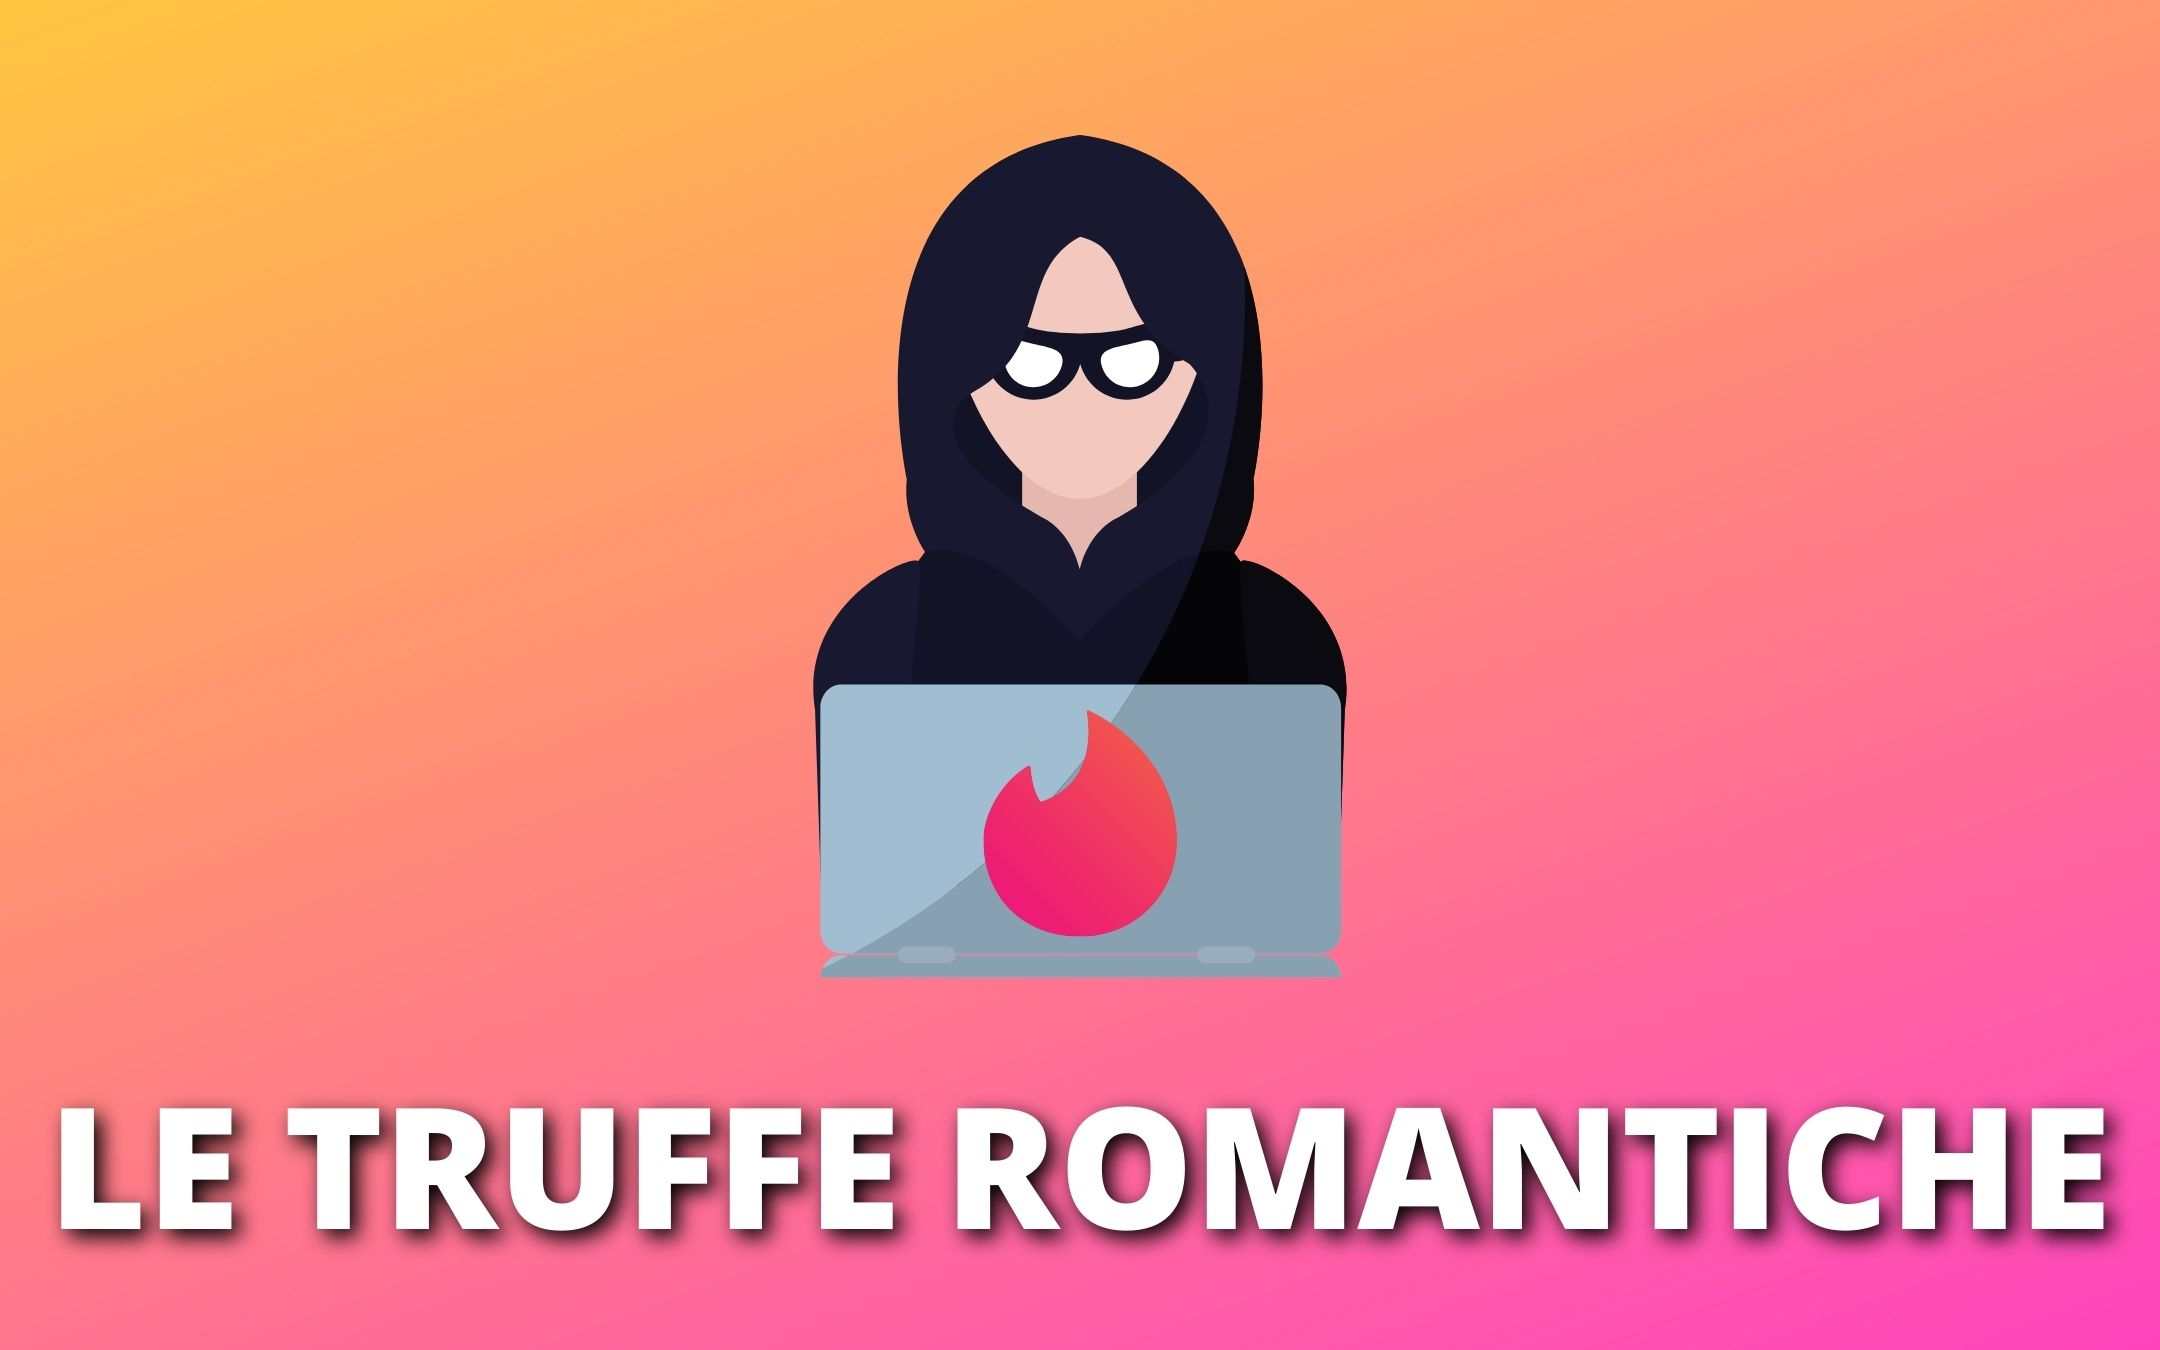 Come sono le truffe romantiche e perché funzionano sulle app di dating